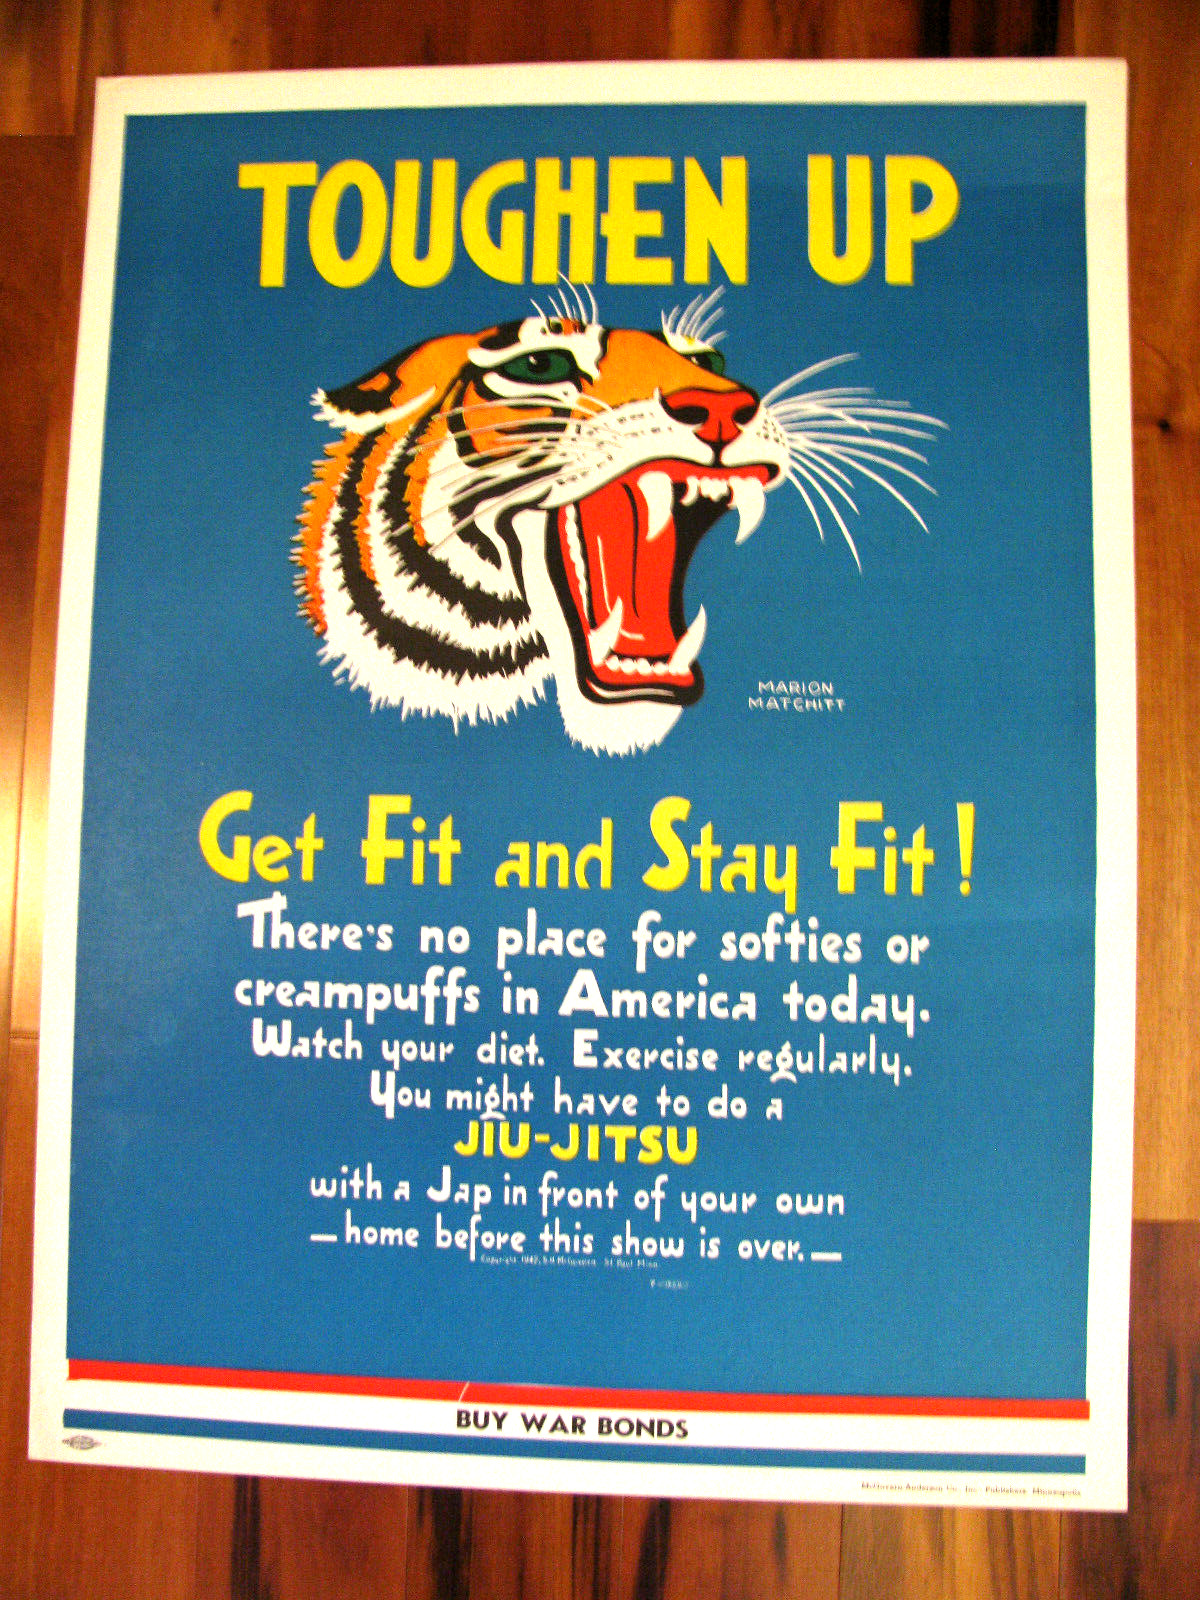 Scarce Original WWII War Poster, Toughen Up, Get Fit And Stay Fit, Matchitt,1942